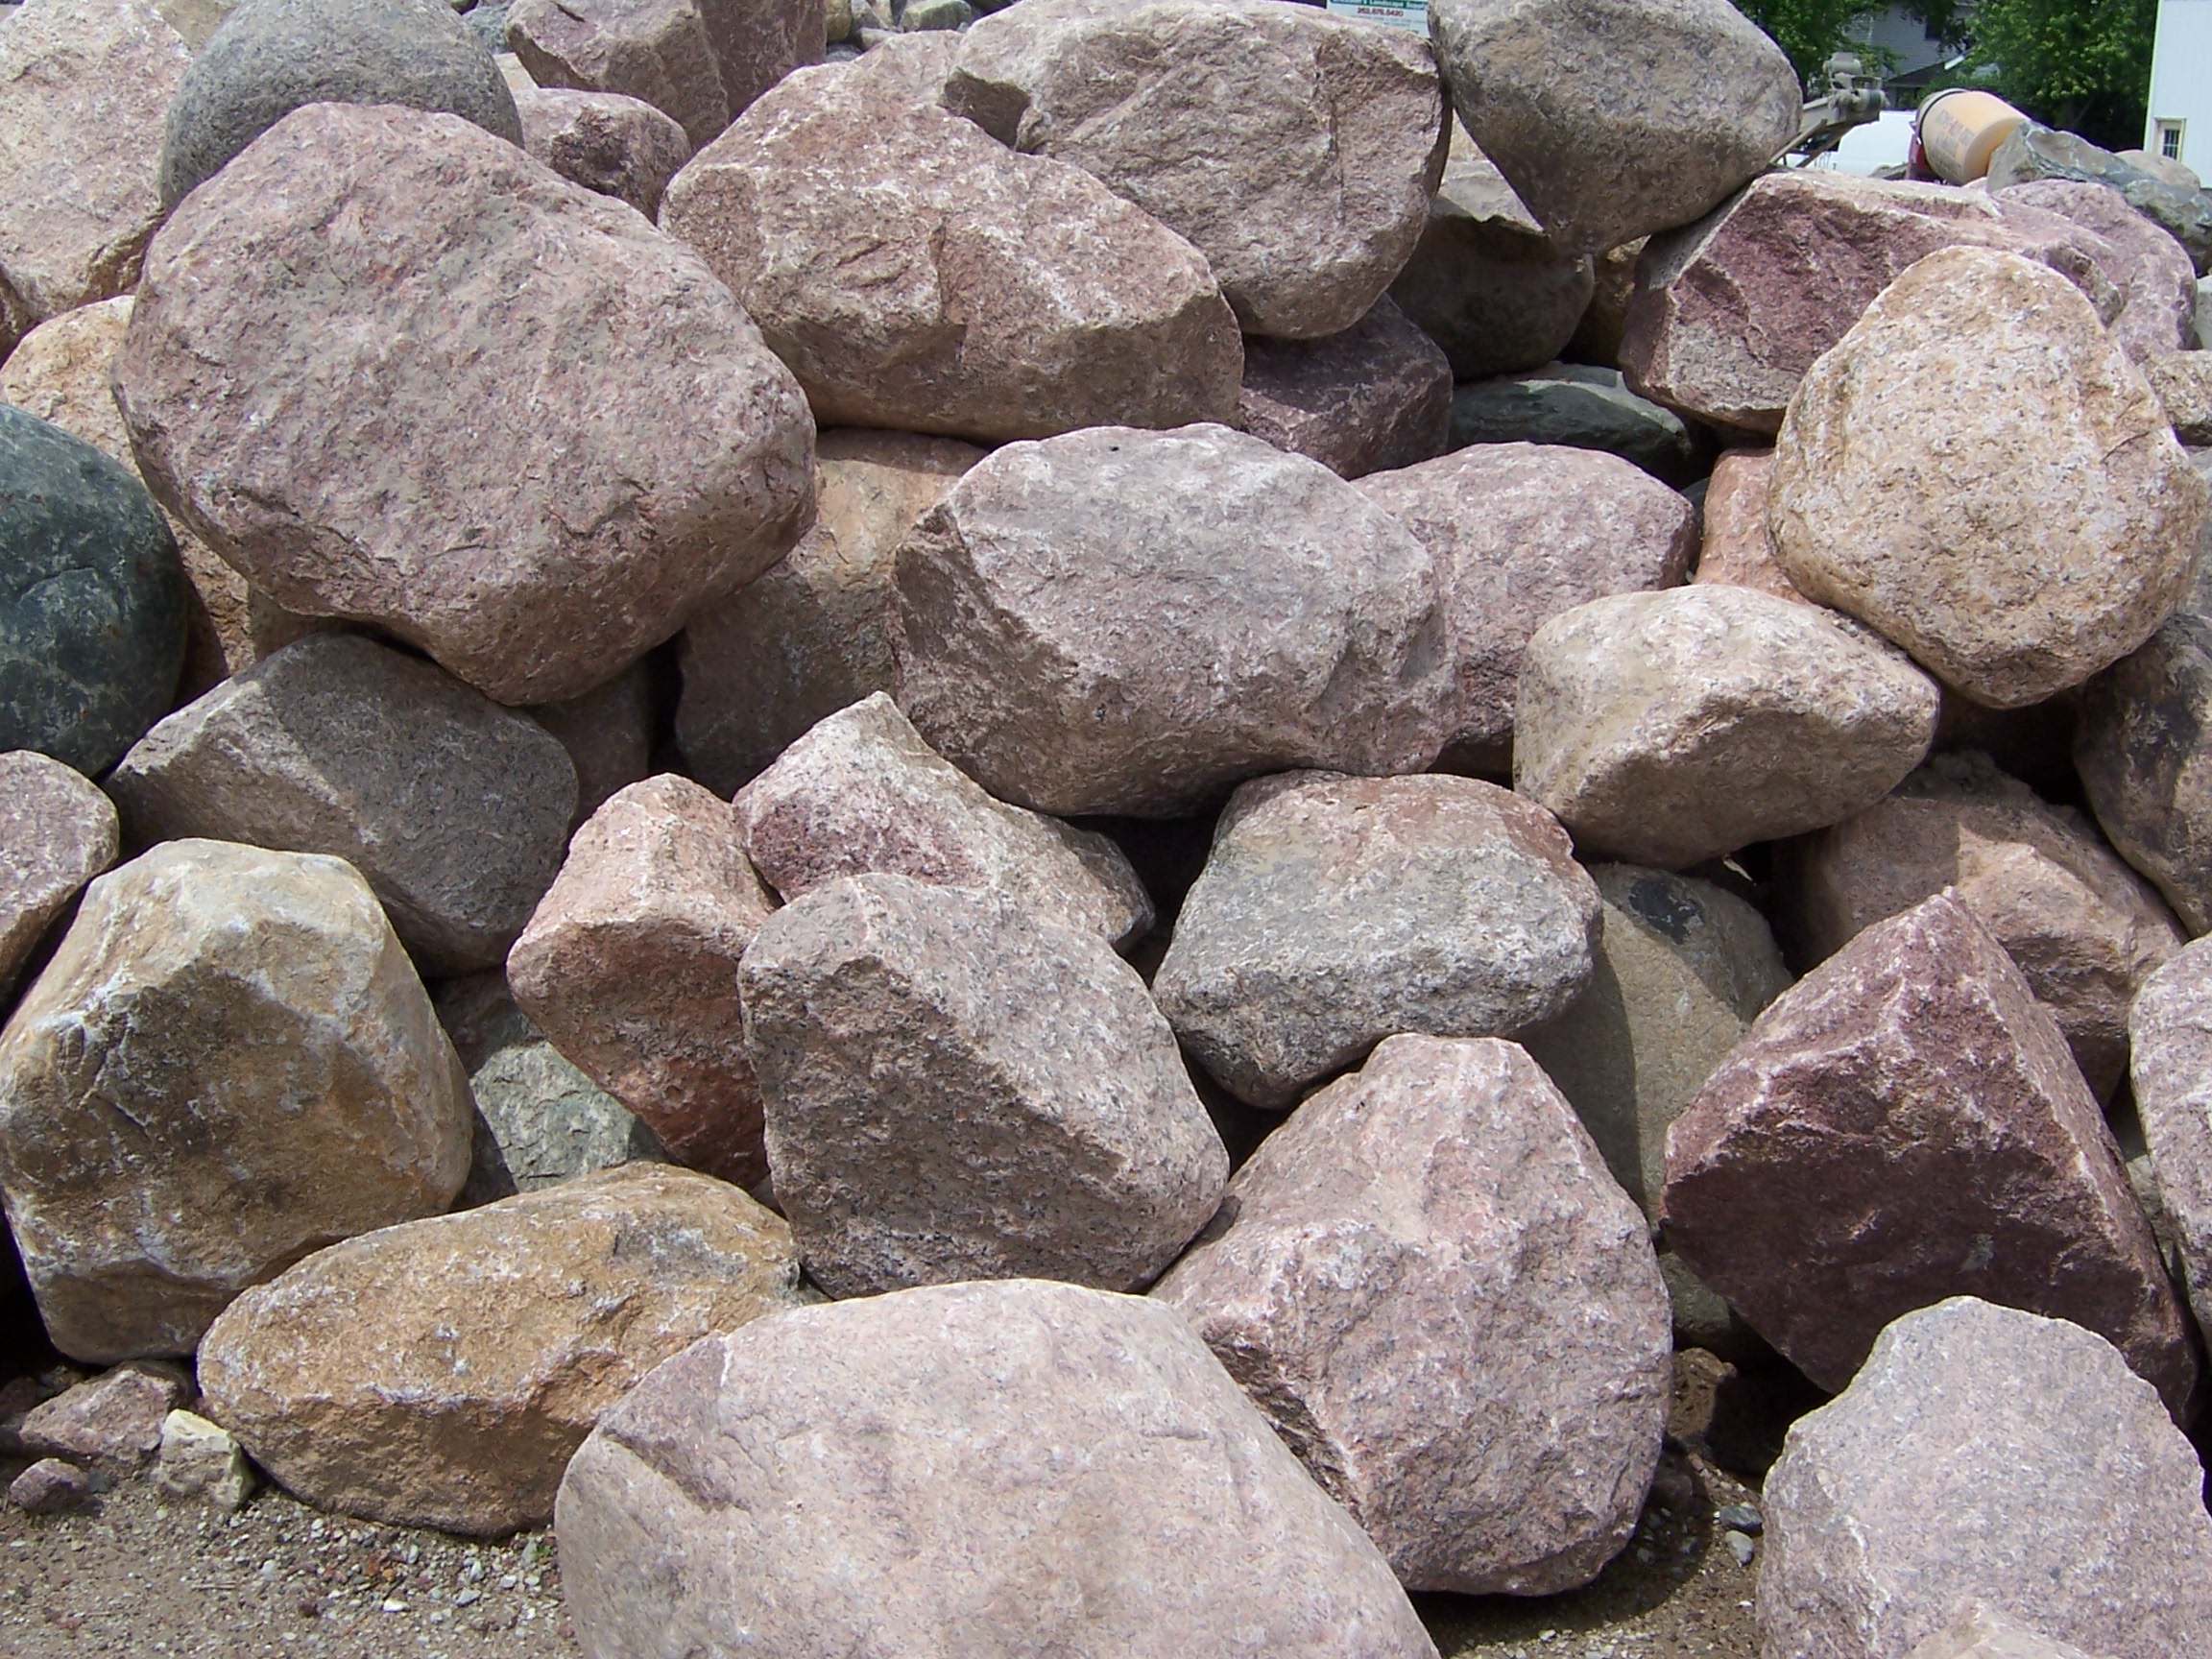 Glacial Granite Boulders XL